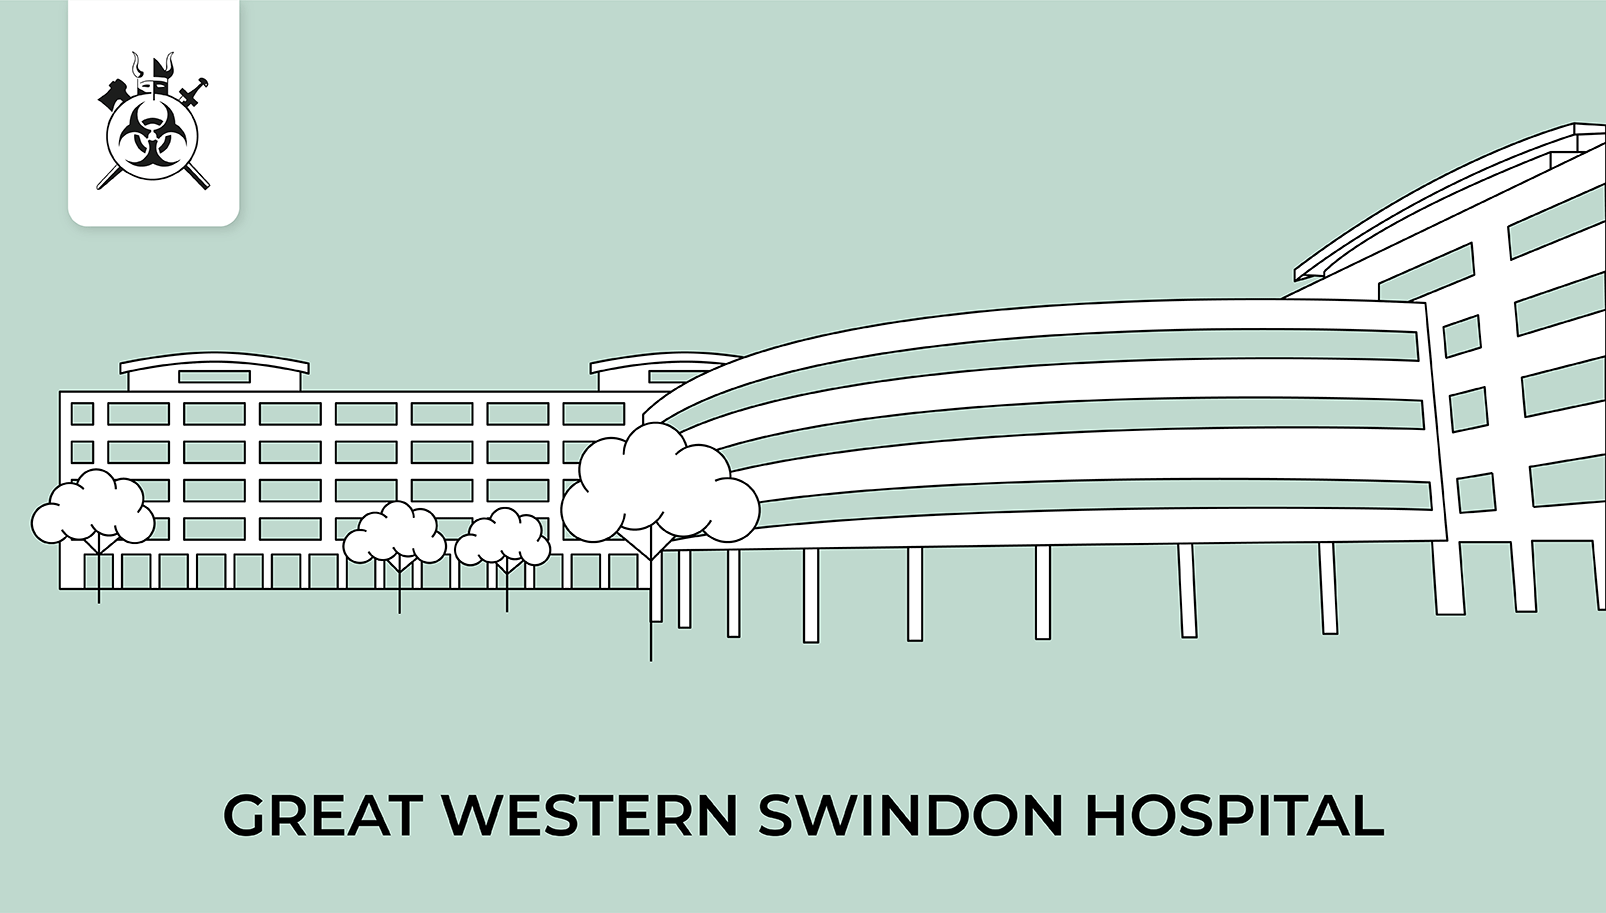 Great Western Swindon Hospital